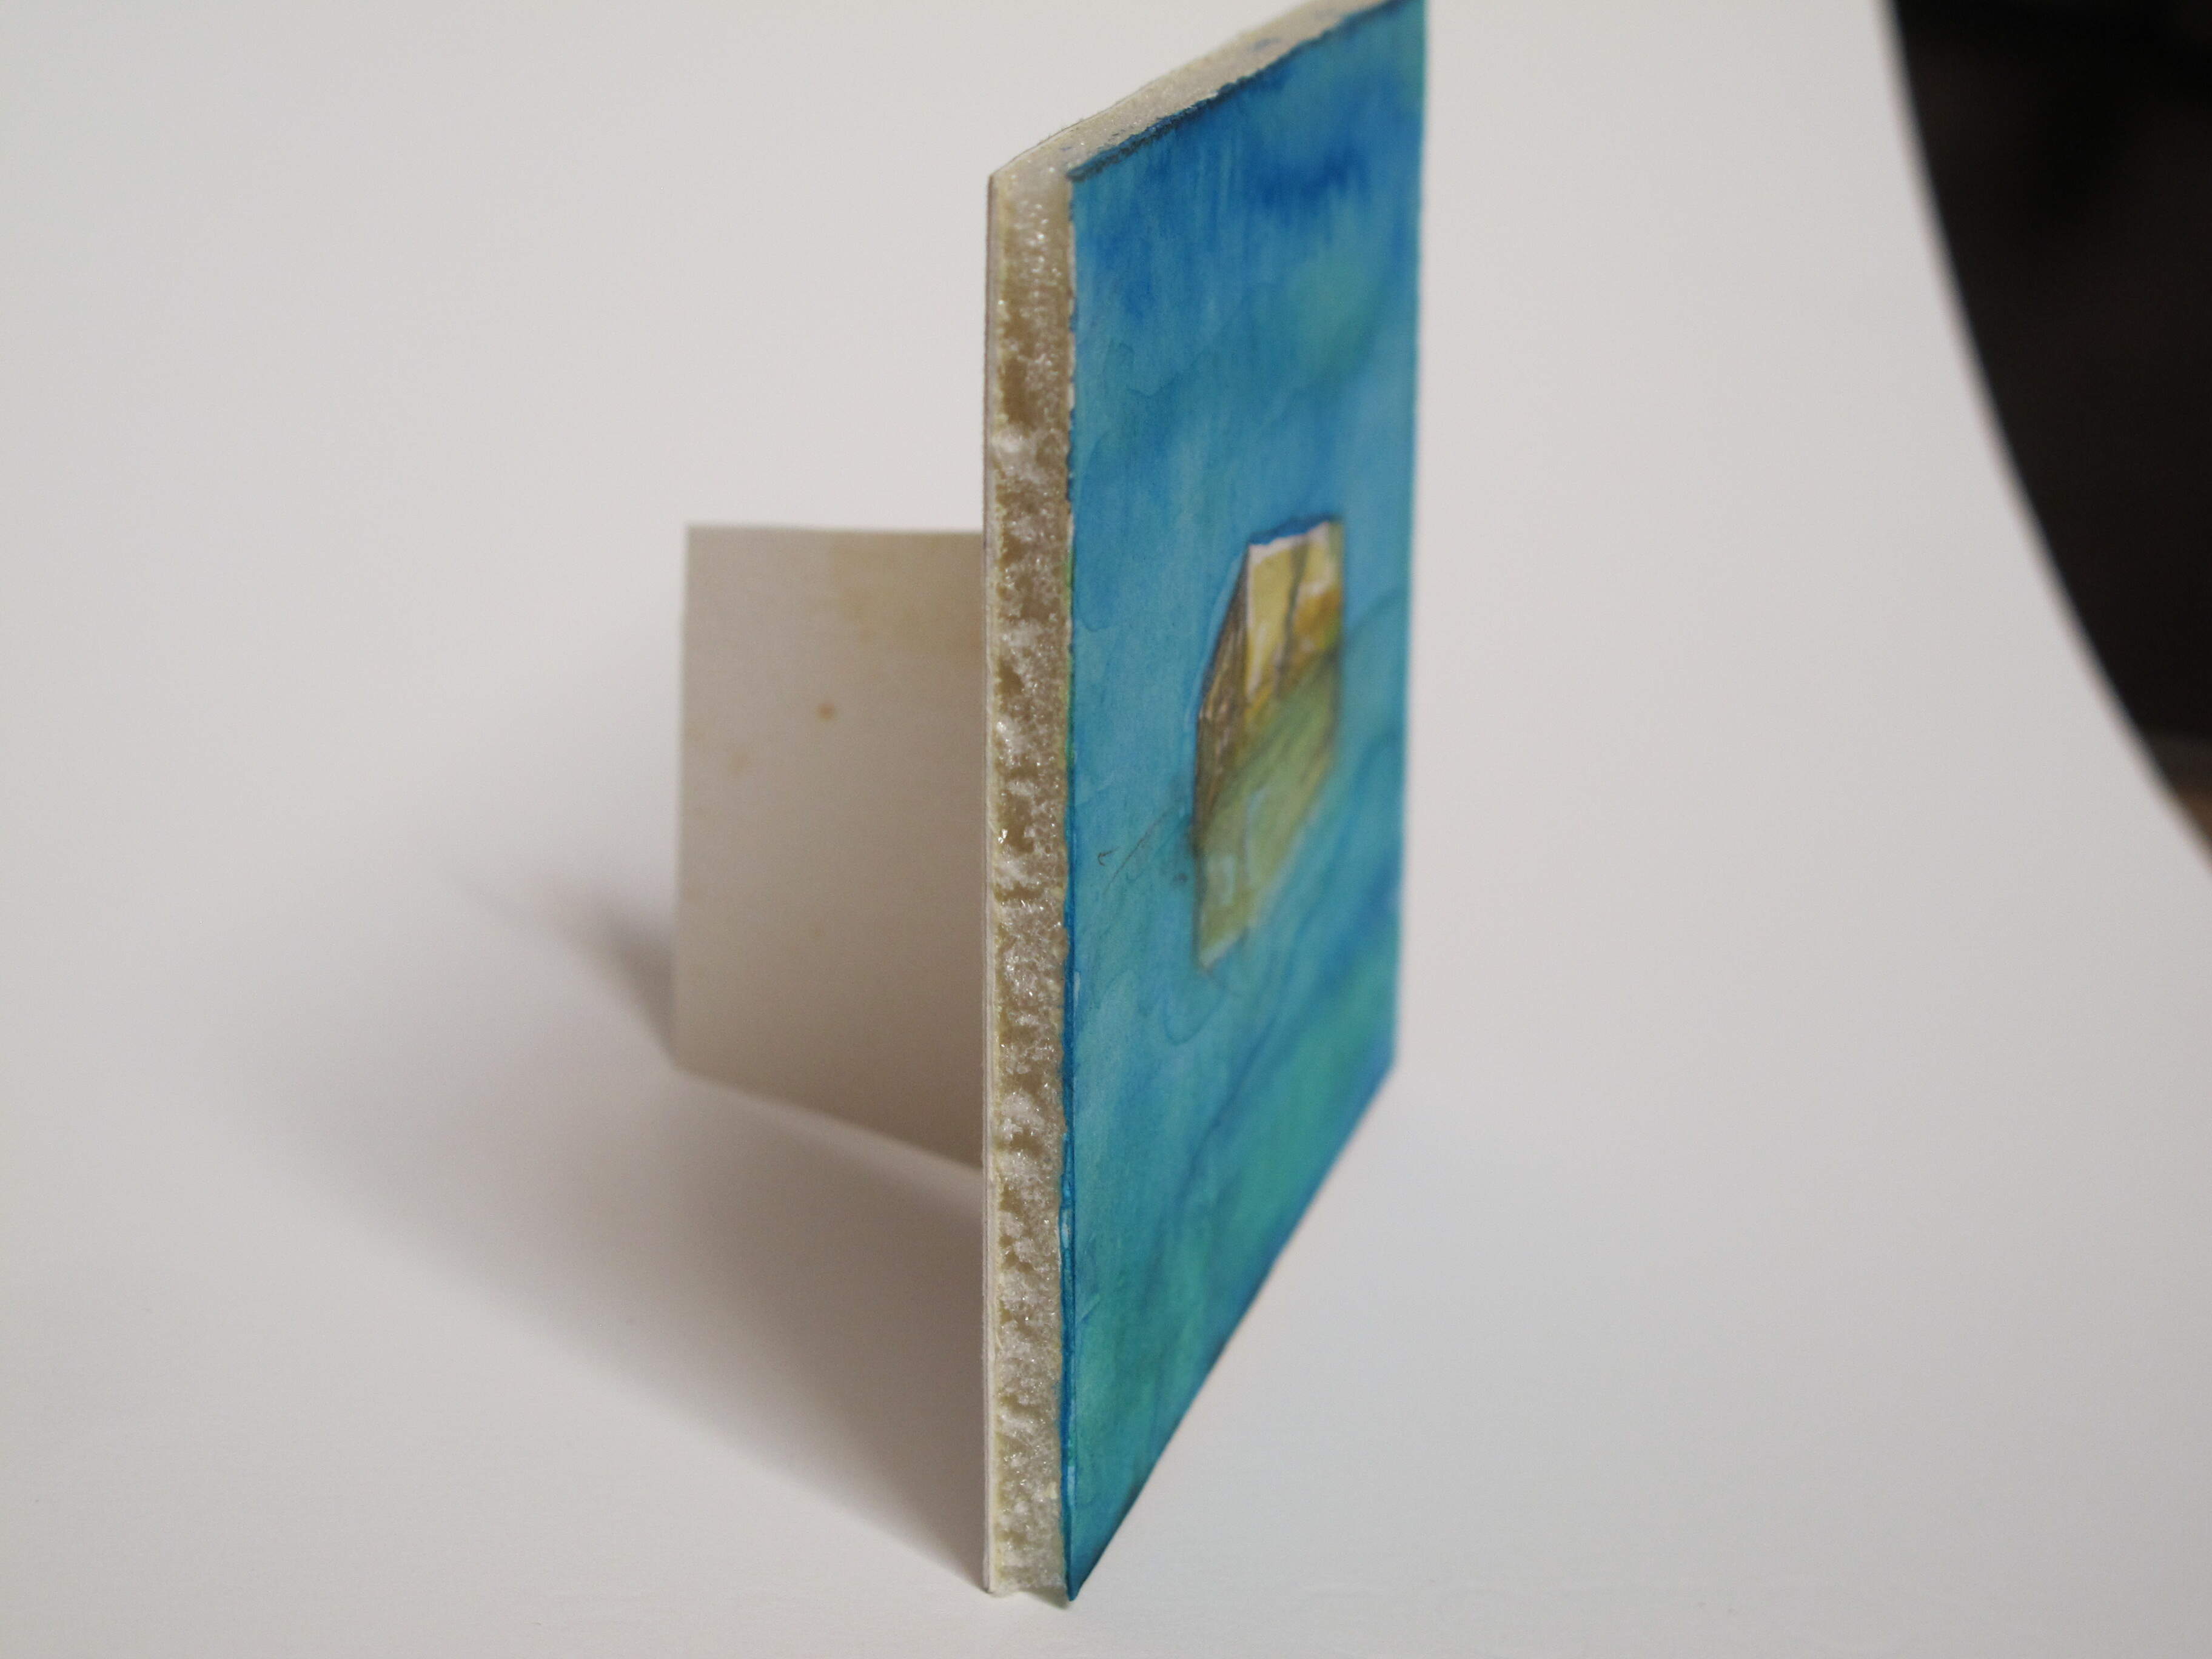 CASAMATTA di Tano Giuffrida. Acquerello, cm 9,4 x 7,8, magnete.